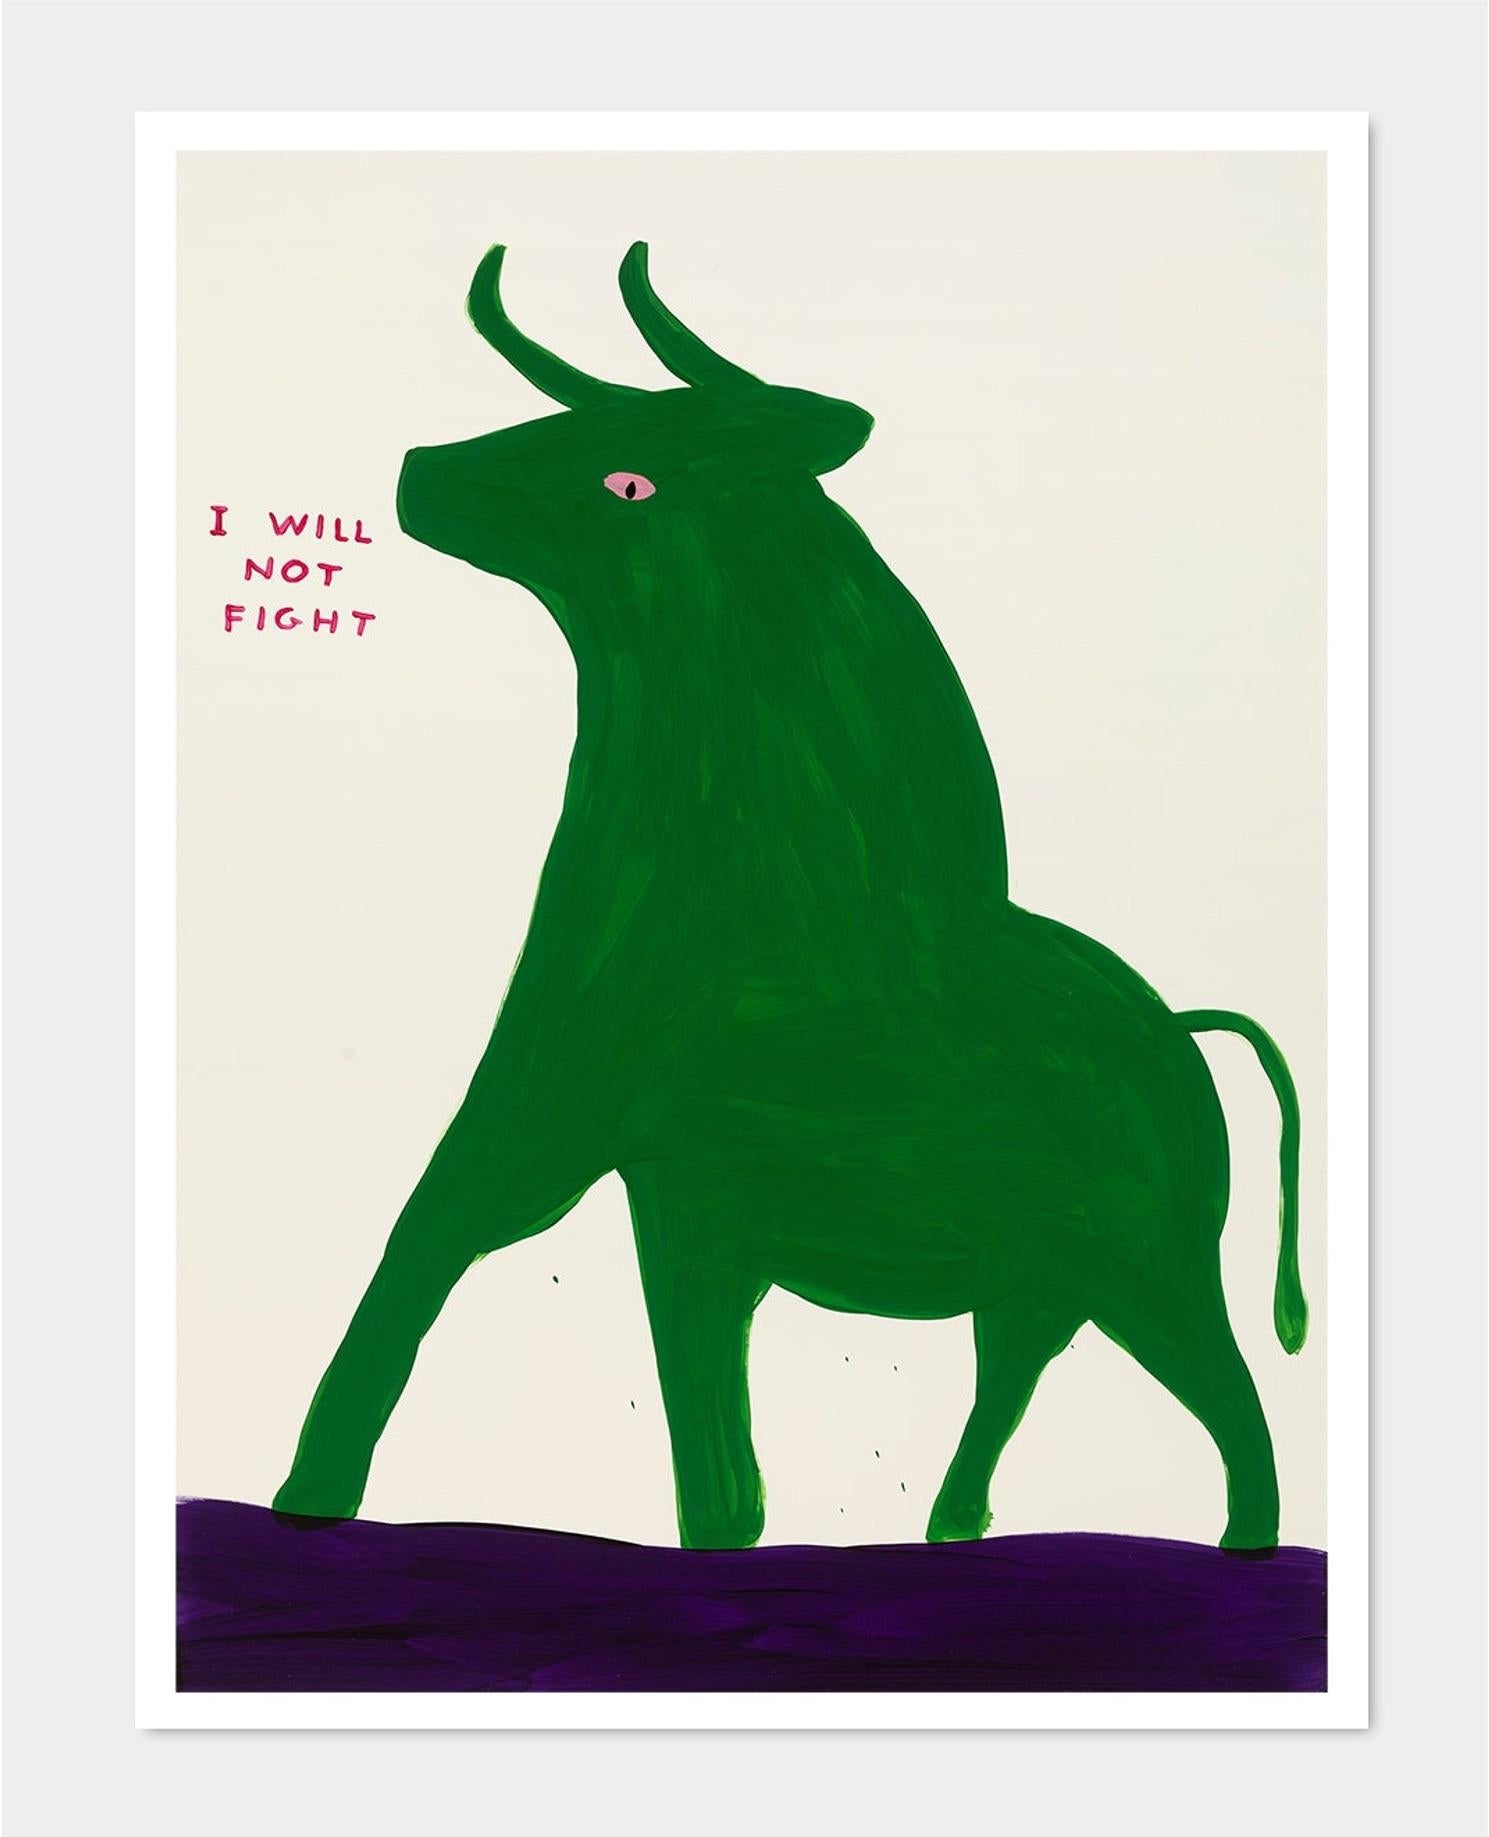 David Shrigley
Sans titre (Je ne me battrai pas) (2019)
80 x 60 cm
Lithographie offset
Imprimé sur papier Munken Lynx 200g